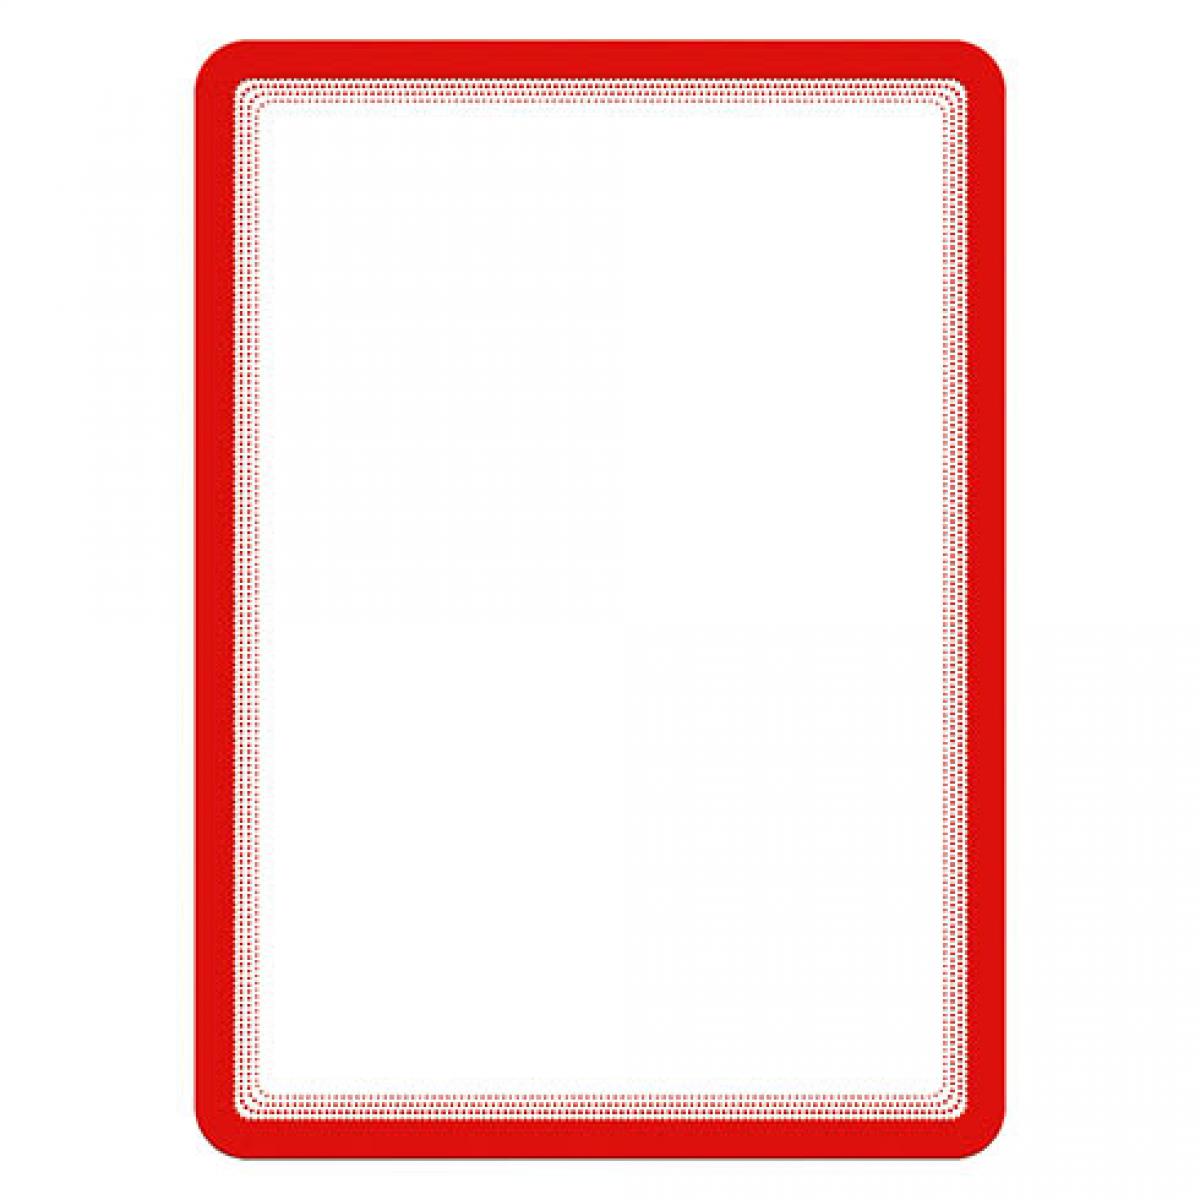 Tarifold - Pochette adhésive Magneto Tarifold rouge- Poster A4 - Lot de 2 - Accessoires Bureau